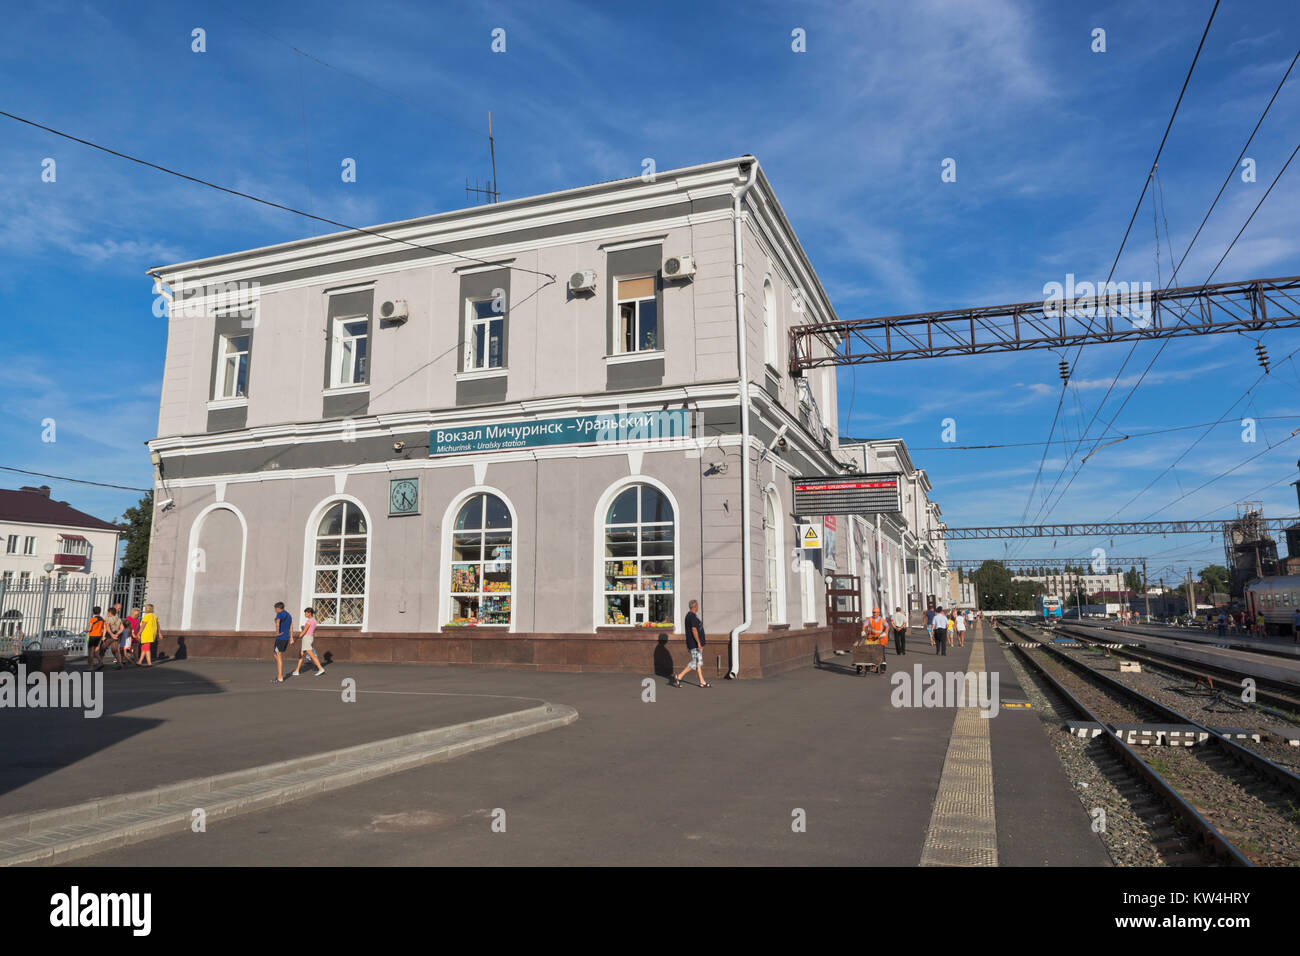 Michurinsk, Tambov region, Russia - July 24, 2017: Railway station Michurinsk-Uralsky in Tambov region Stock Photo